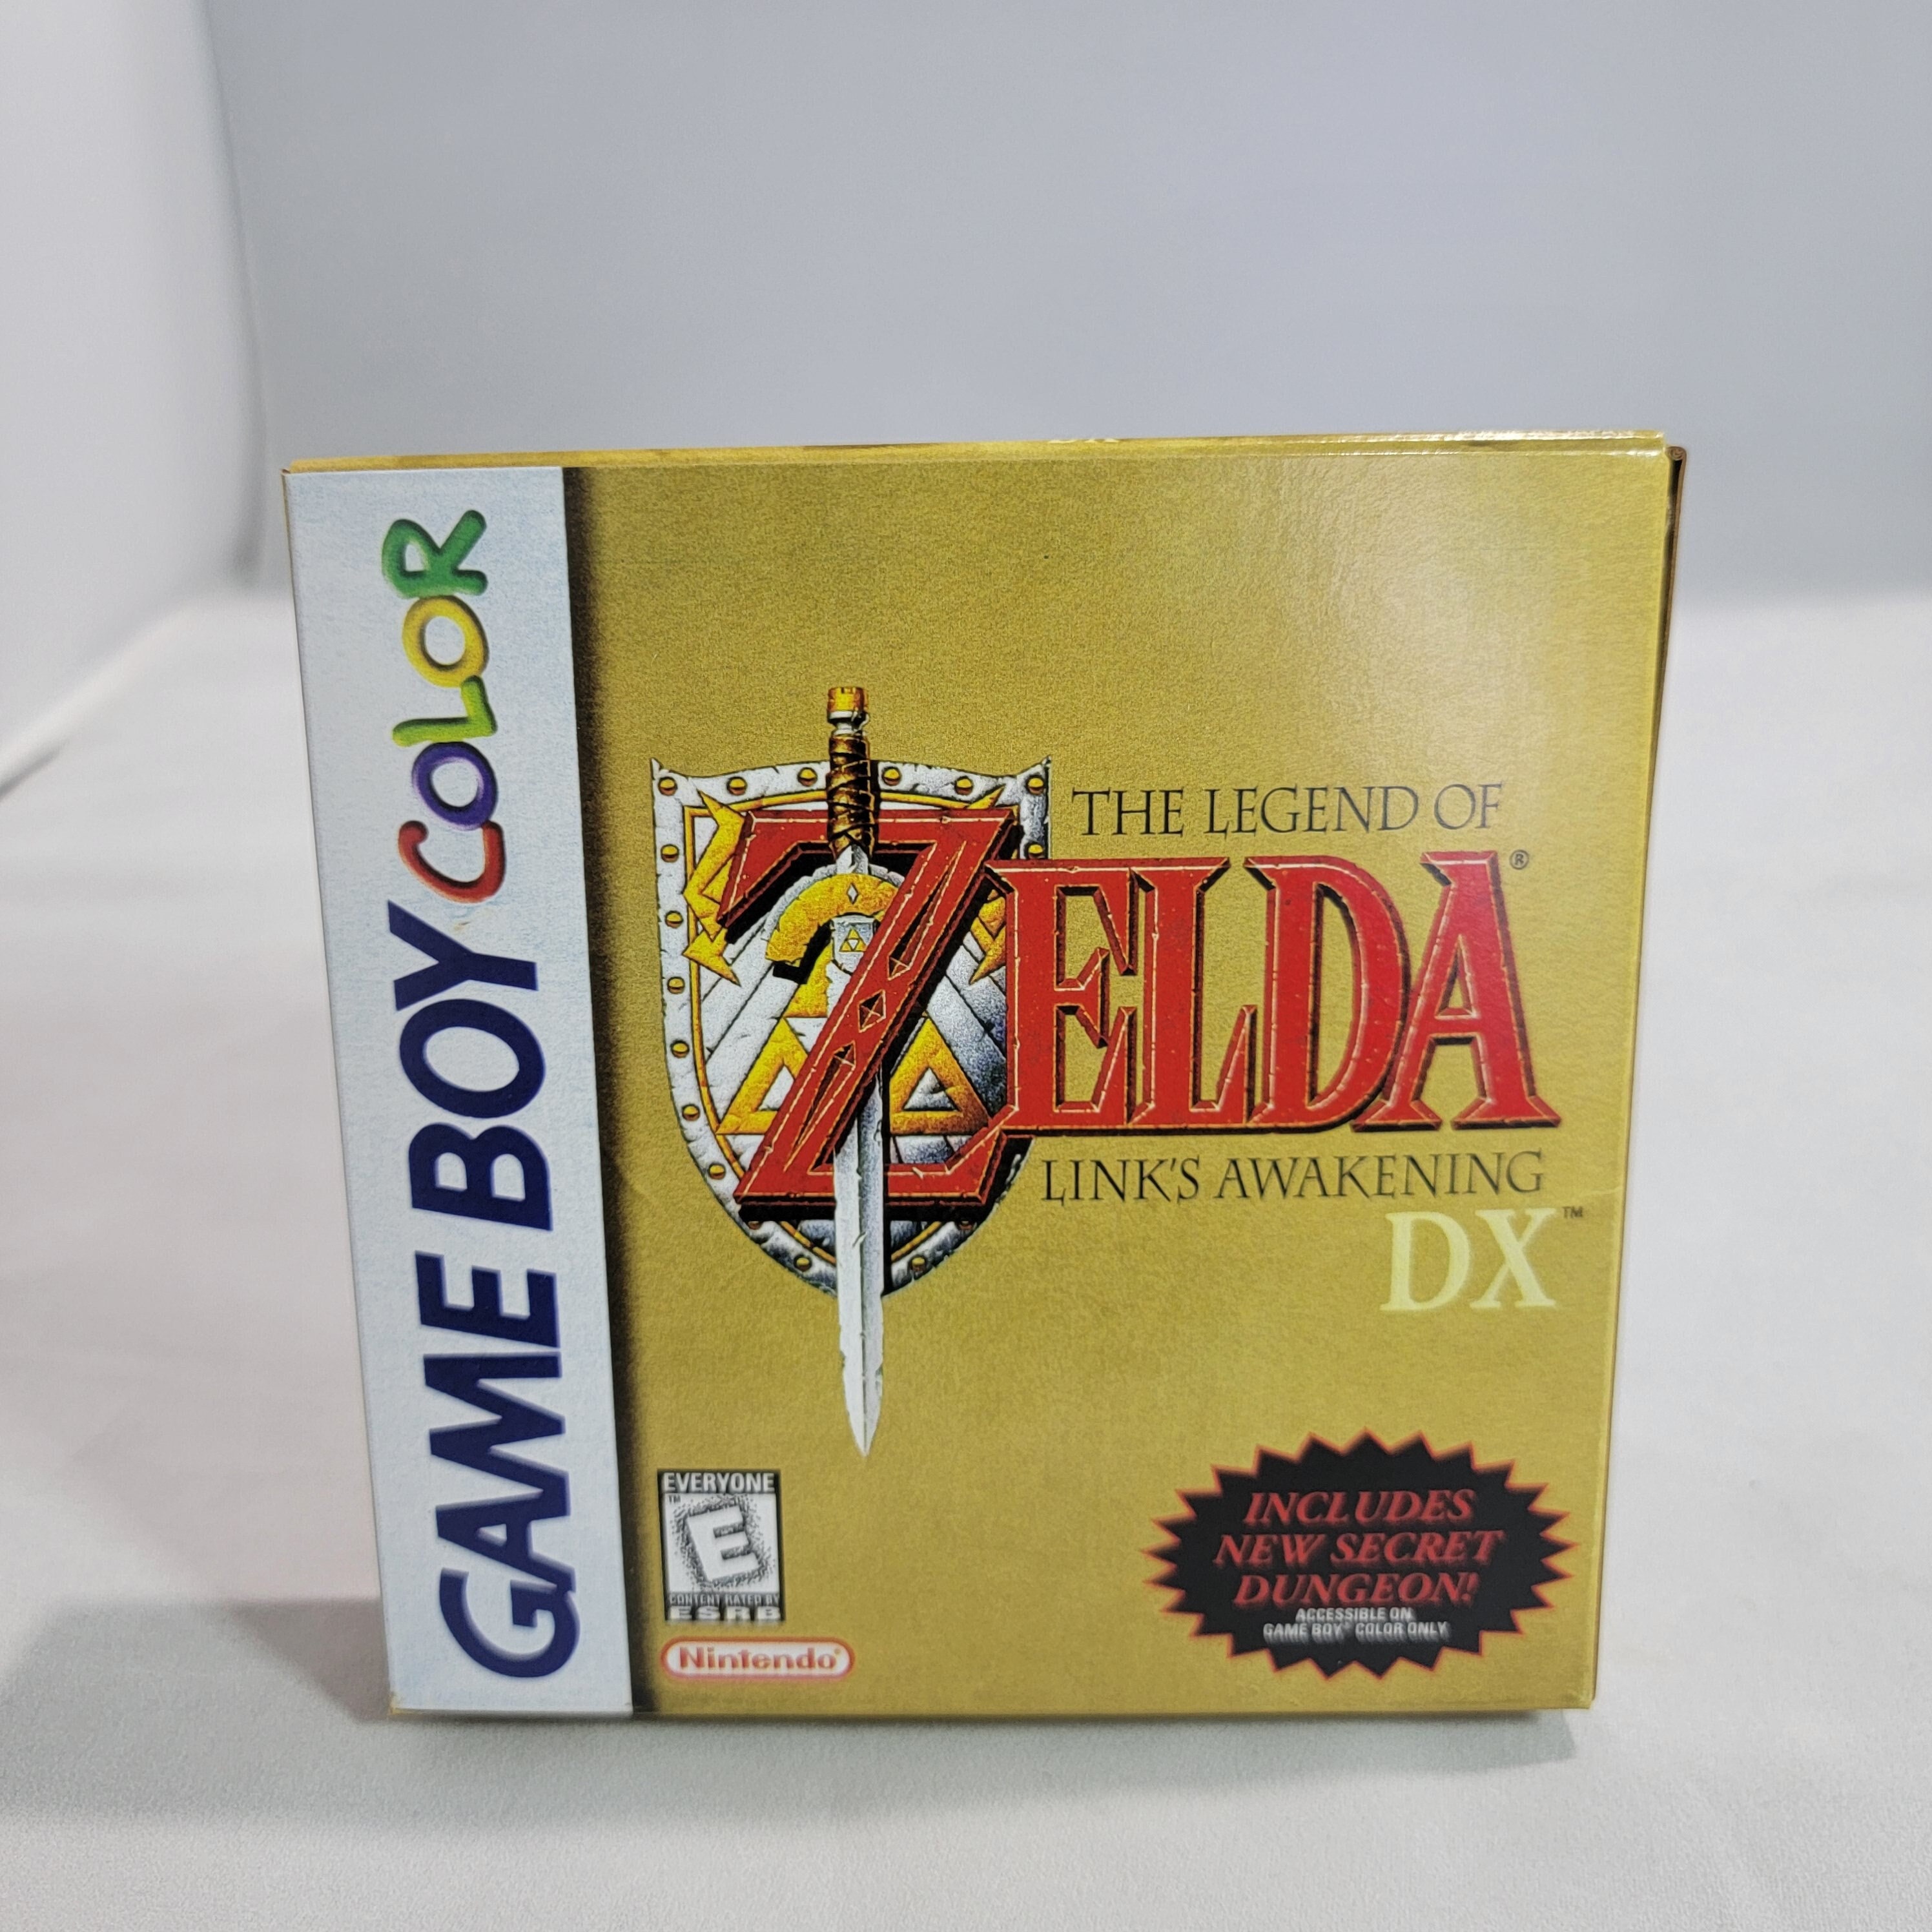 The Legend of Zelda Link's Awakening Dx 32 Bit India